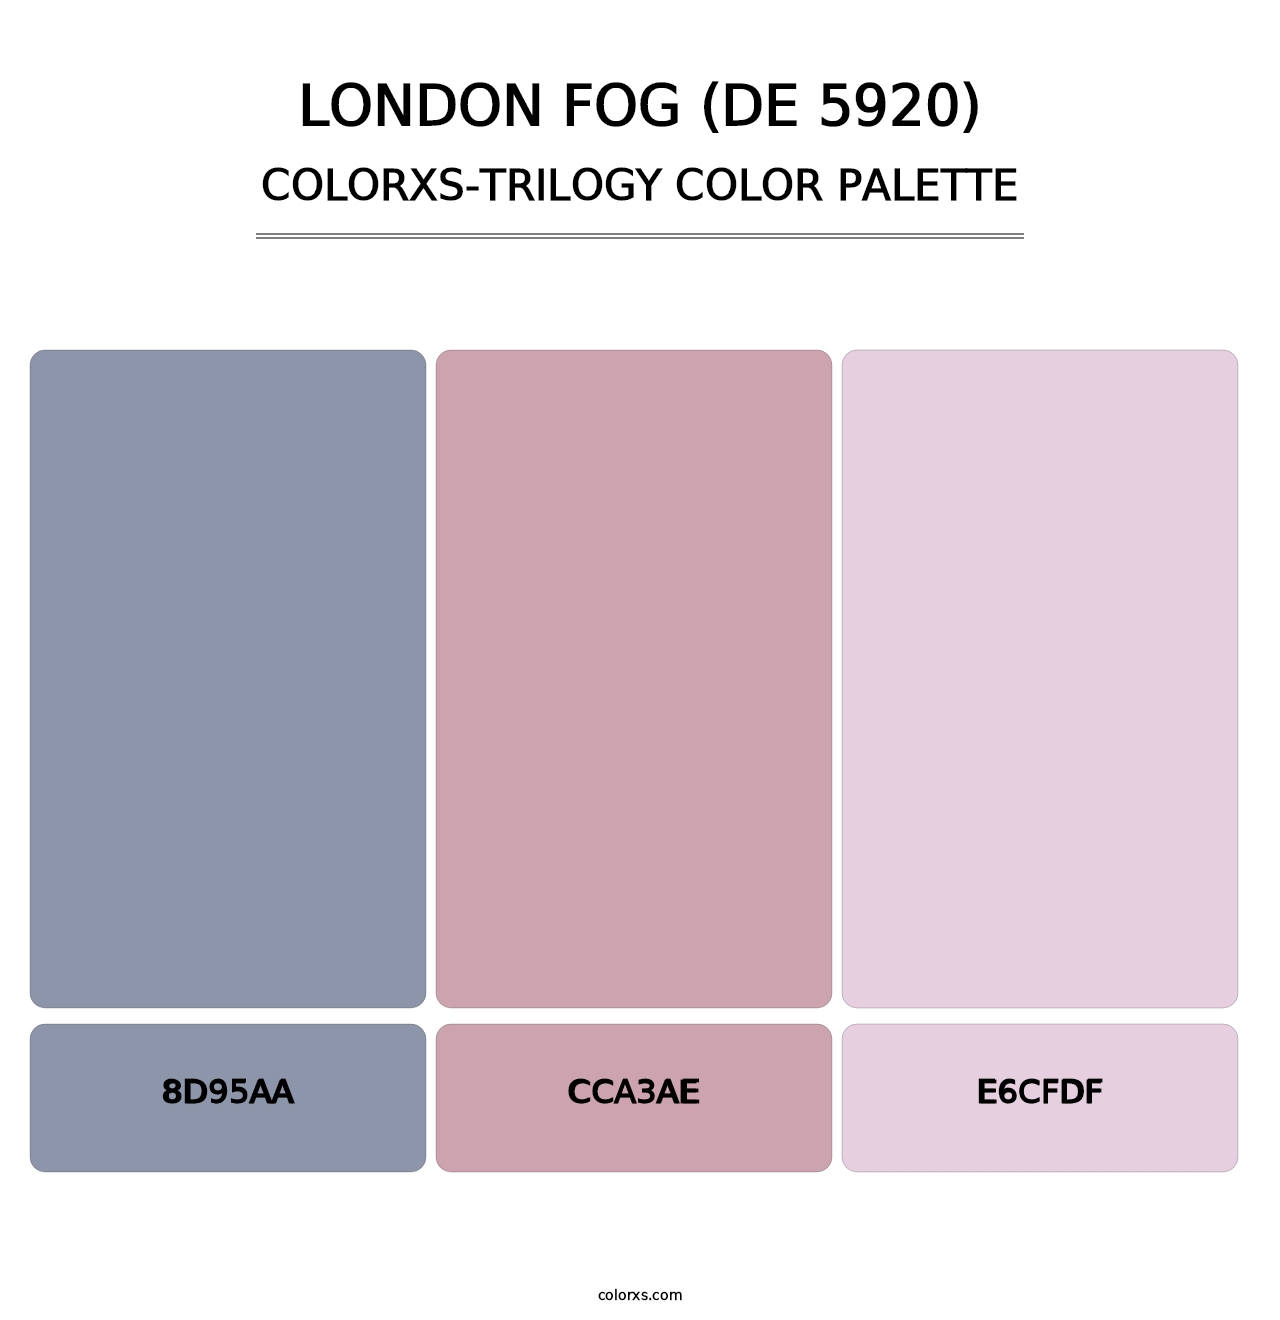 London Fog (DE 5920) - Colorxs Trilogy Palette